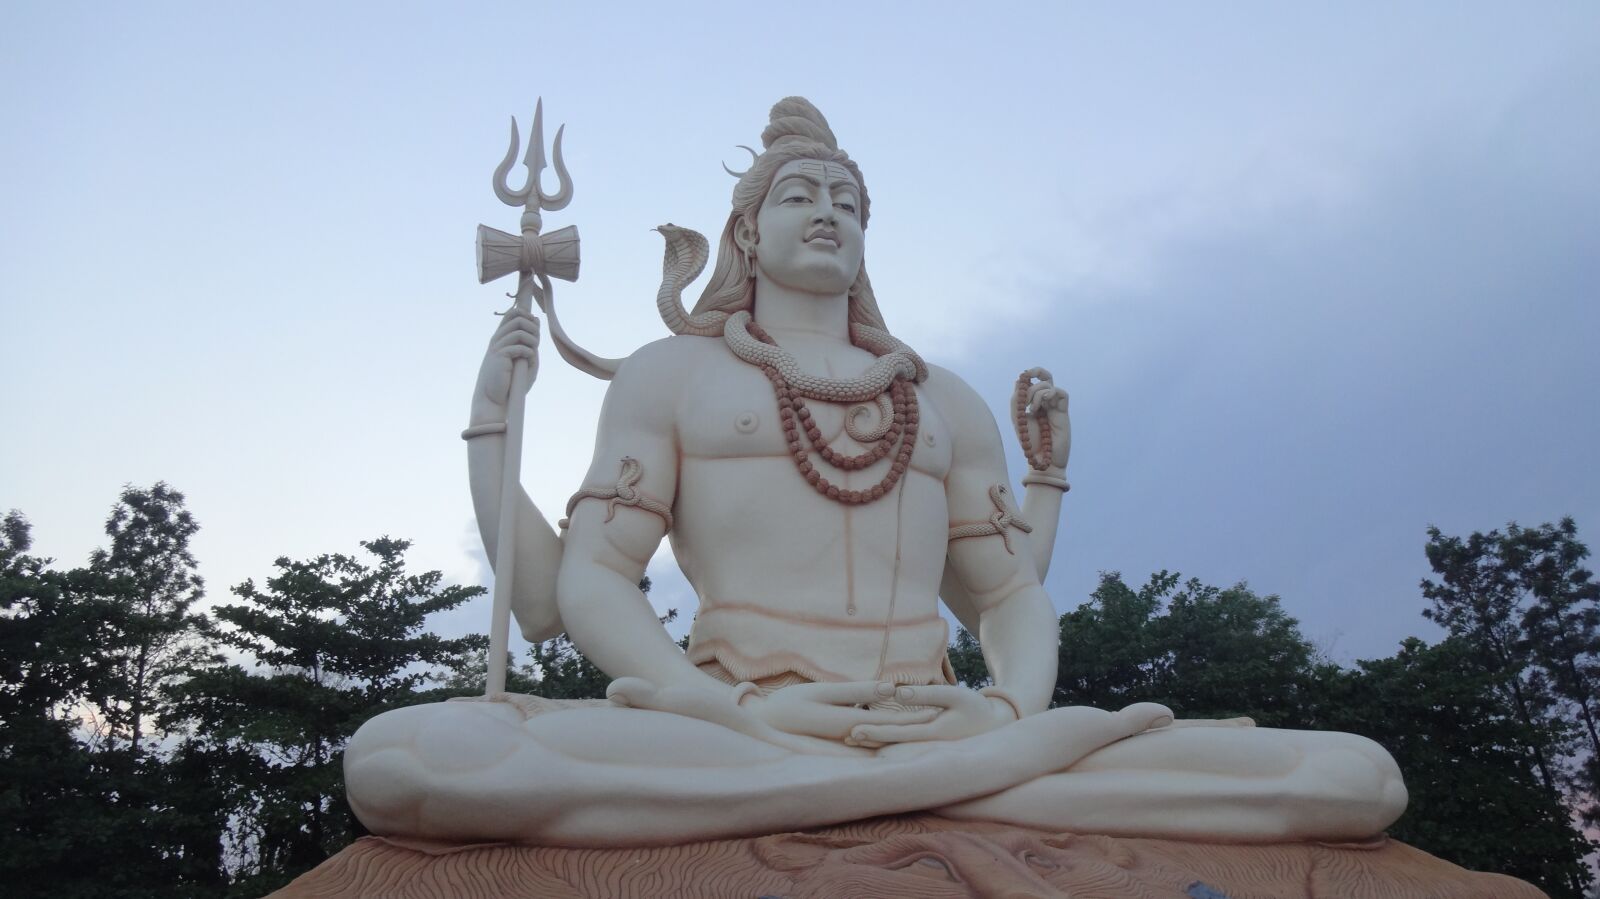 Sony DSC-WX150 sample photo. Shiva, lord shiva, mahadev photography